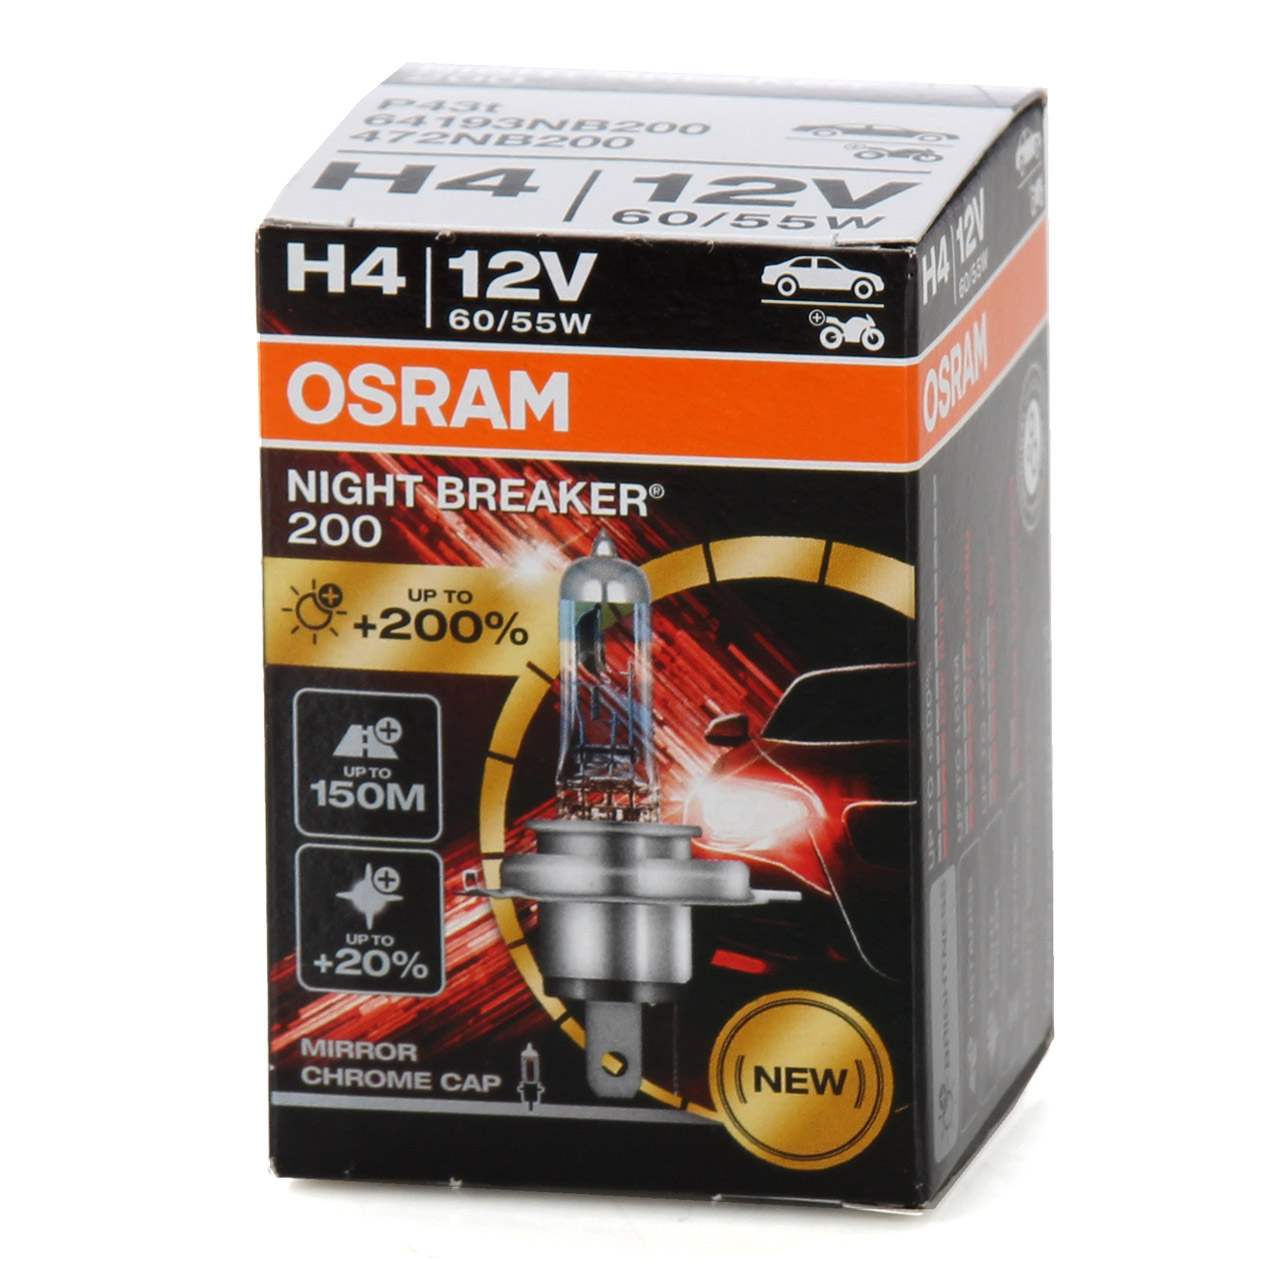 4x OSRAM 64193NB200 Glühlampe H4 NIGHT BREAKER 200 12V 60/55W P43t +200%